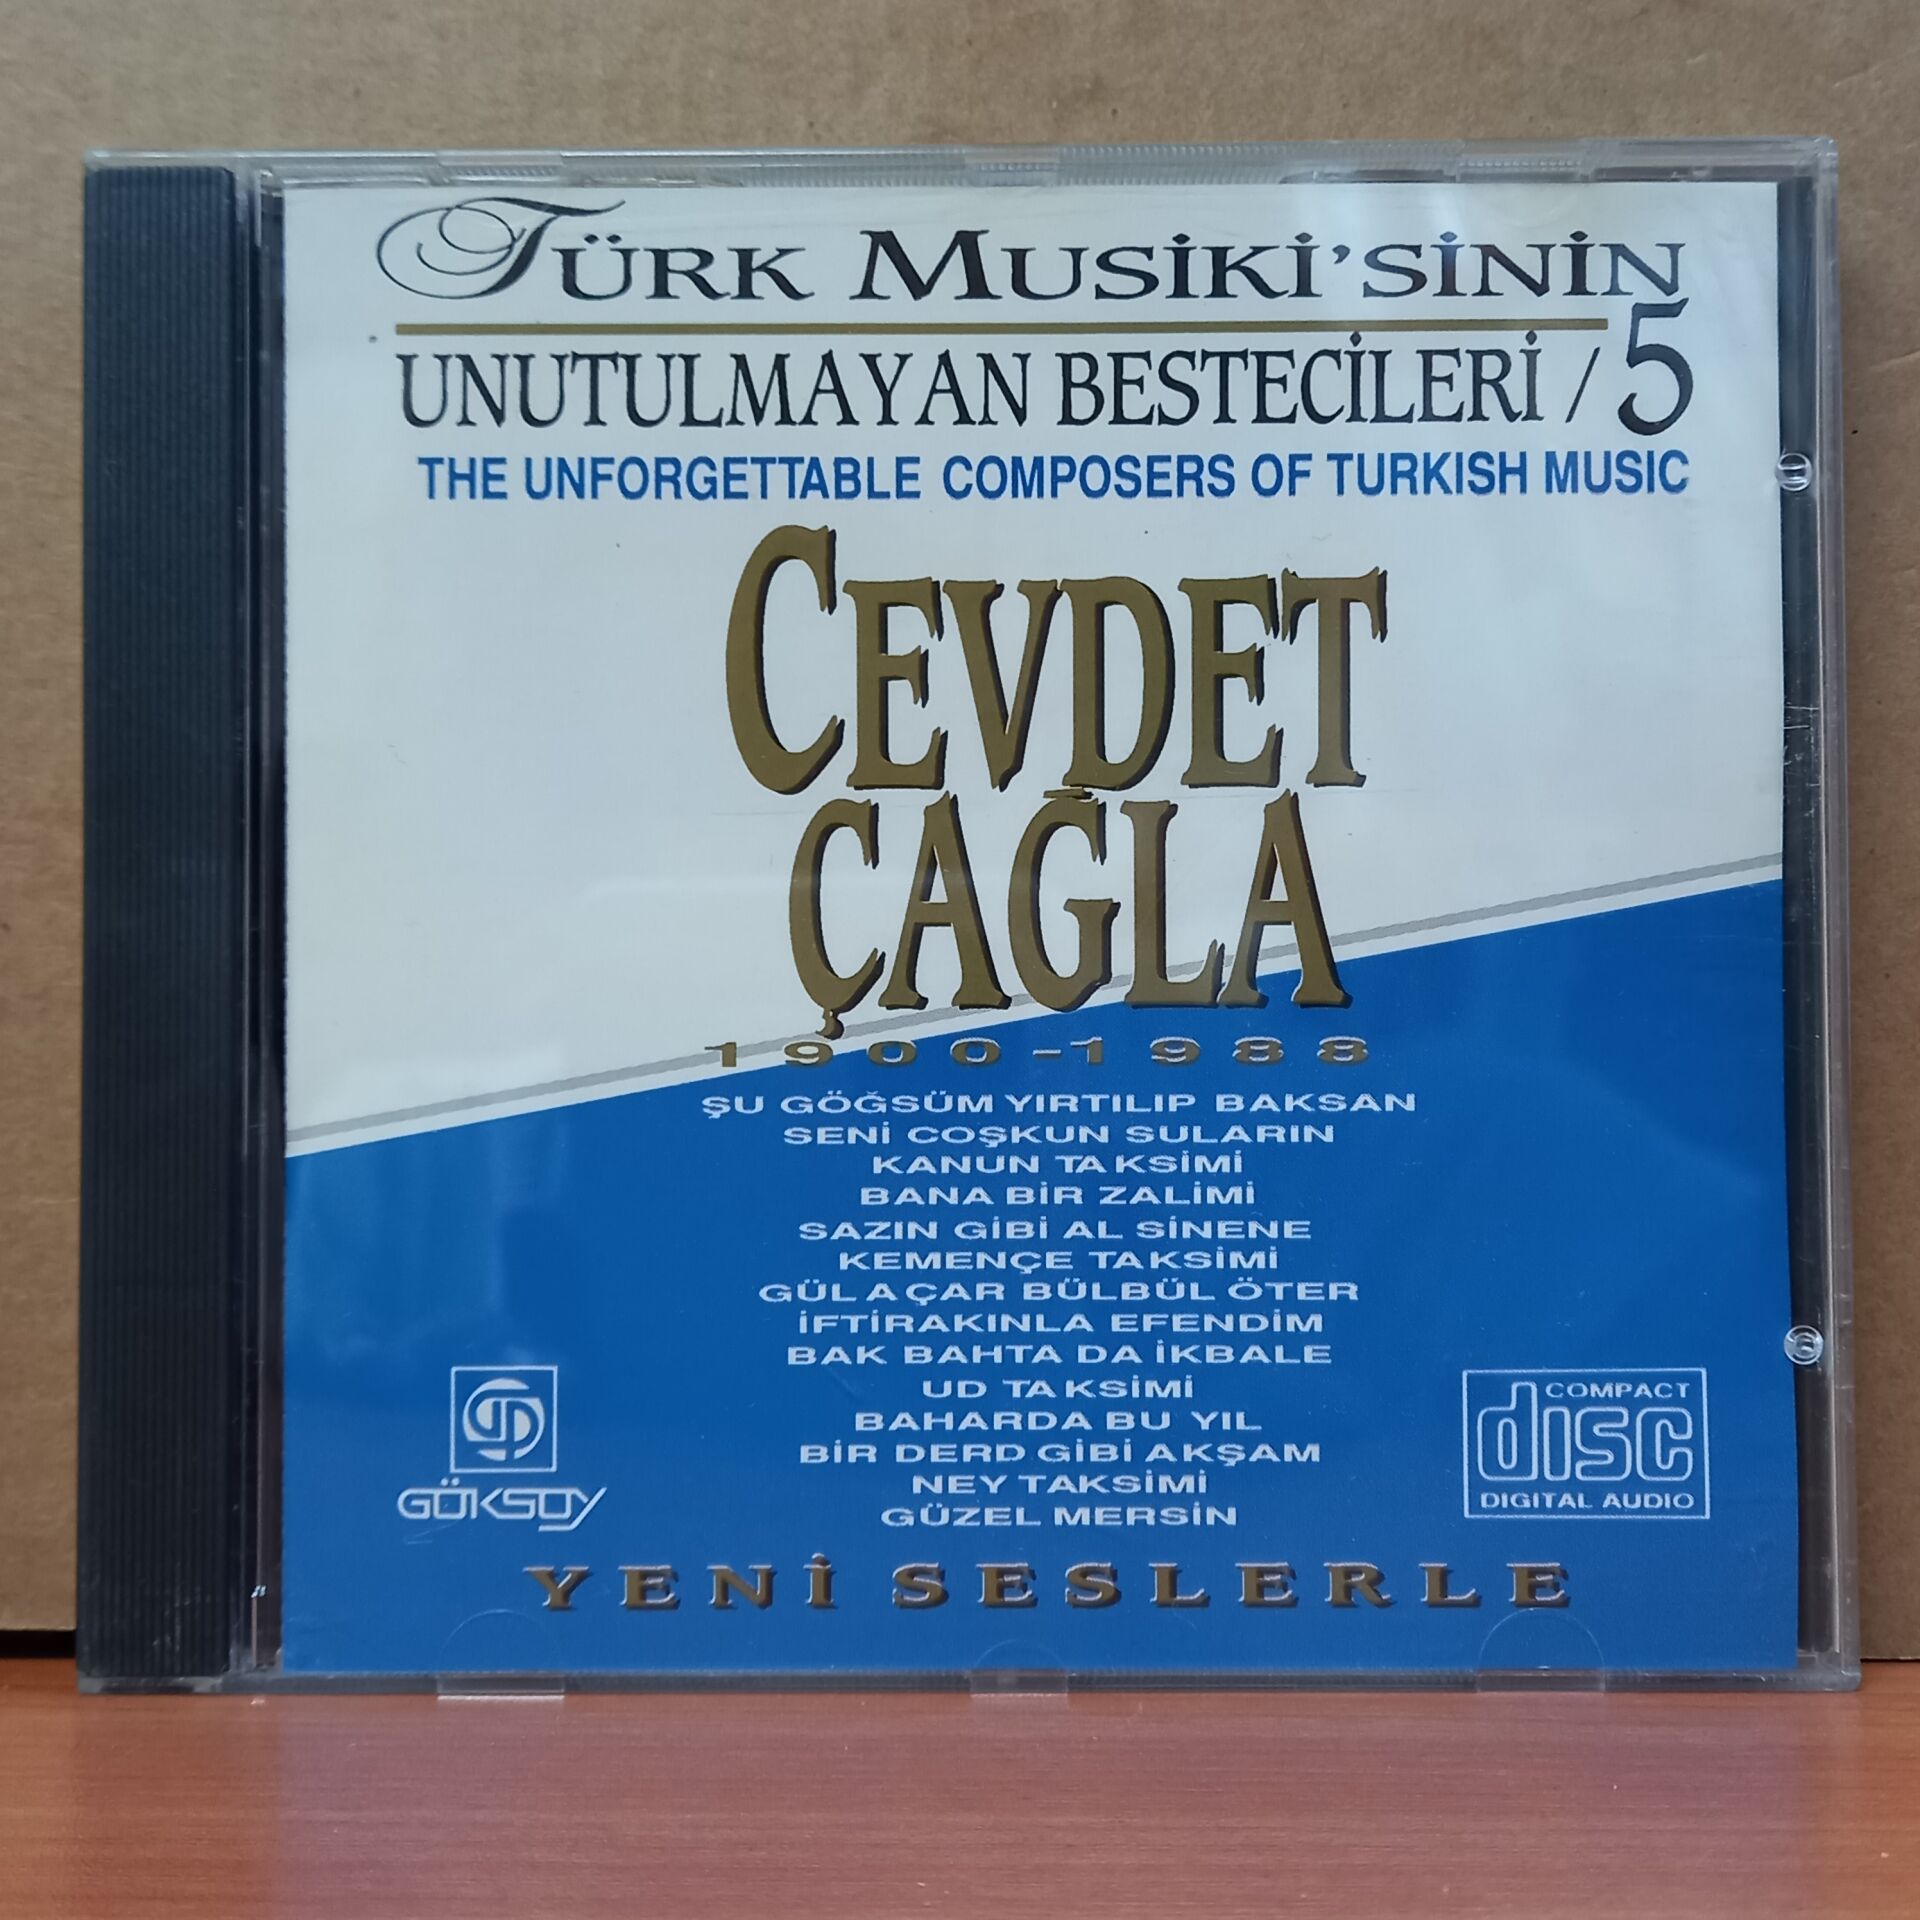 TÜRK MUSİKİ'SİNİN UNUTULMAYAN BESTECİLERİ 5 / CEVDET ÇAĞLA (1993) - CD 2.EL